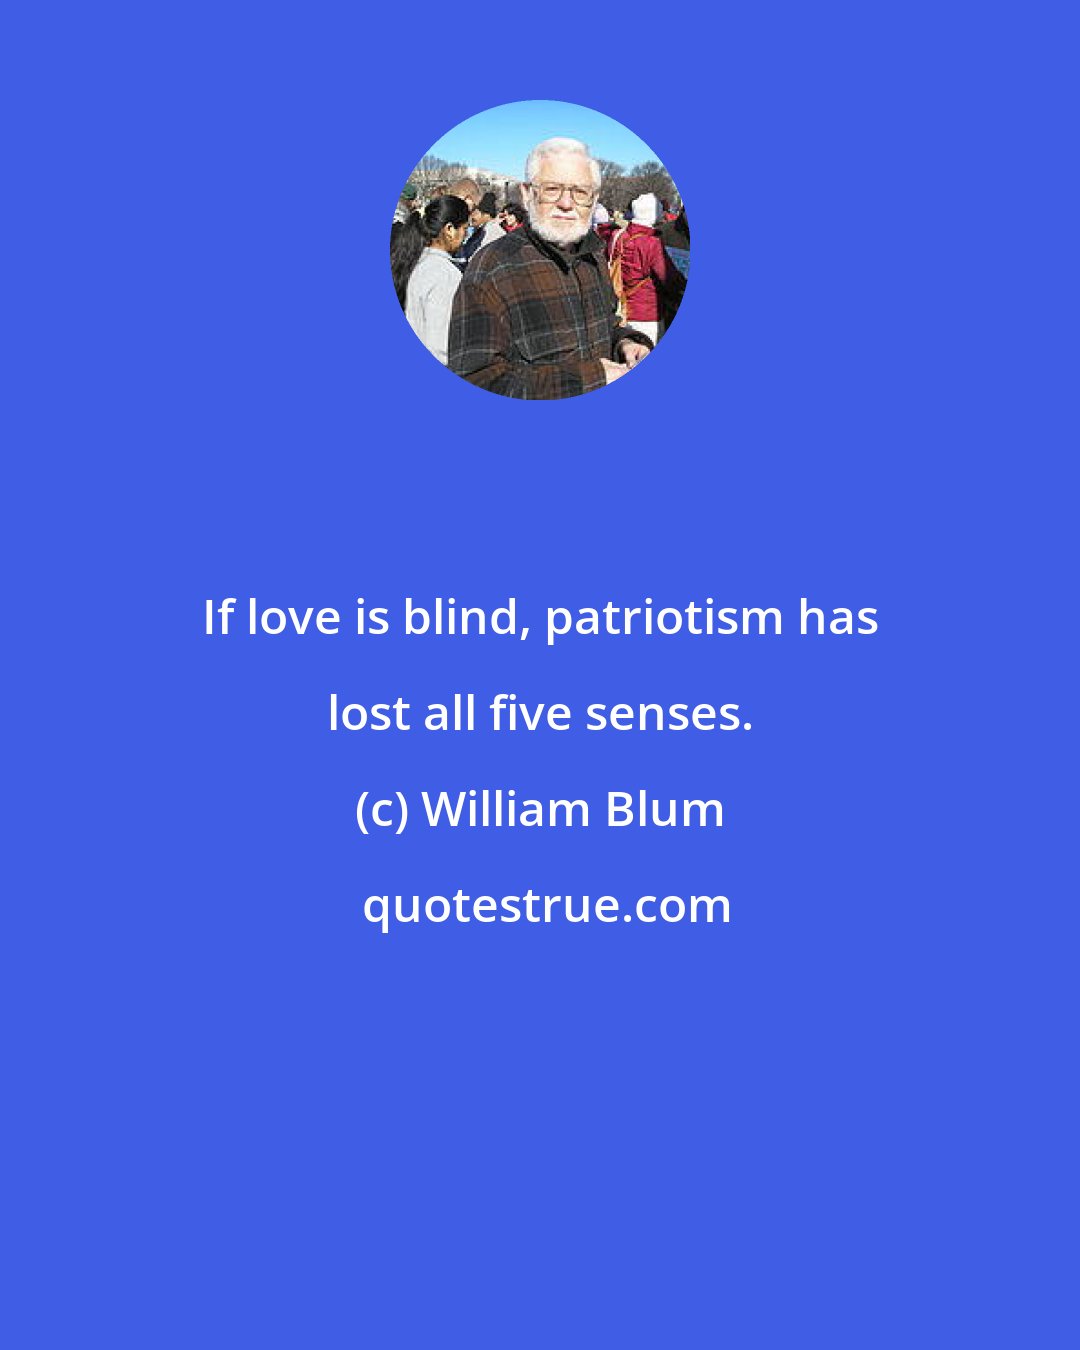 William Blum: If love is blind, patriotism has lost all five senses.